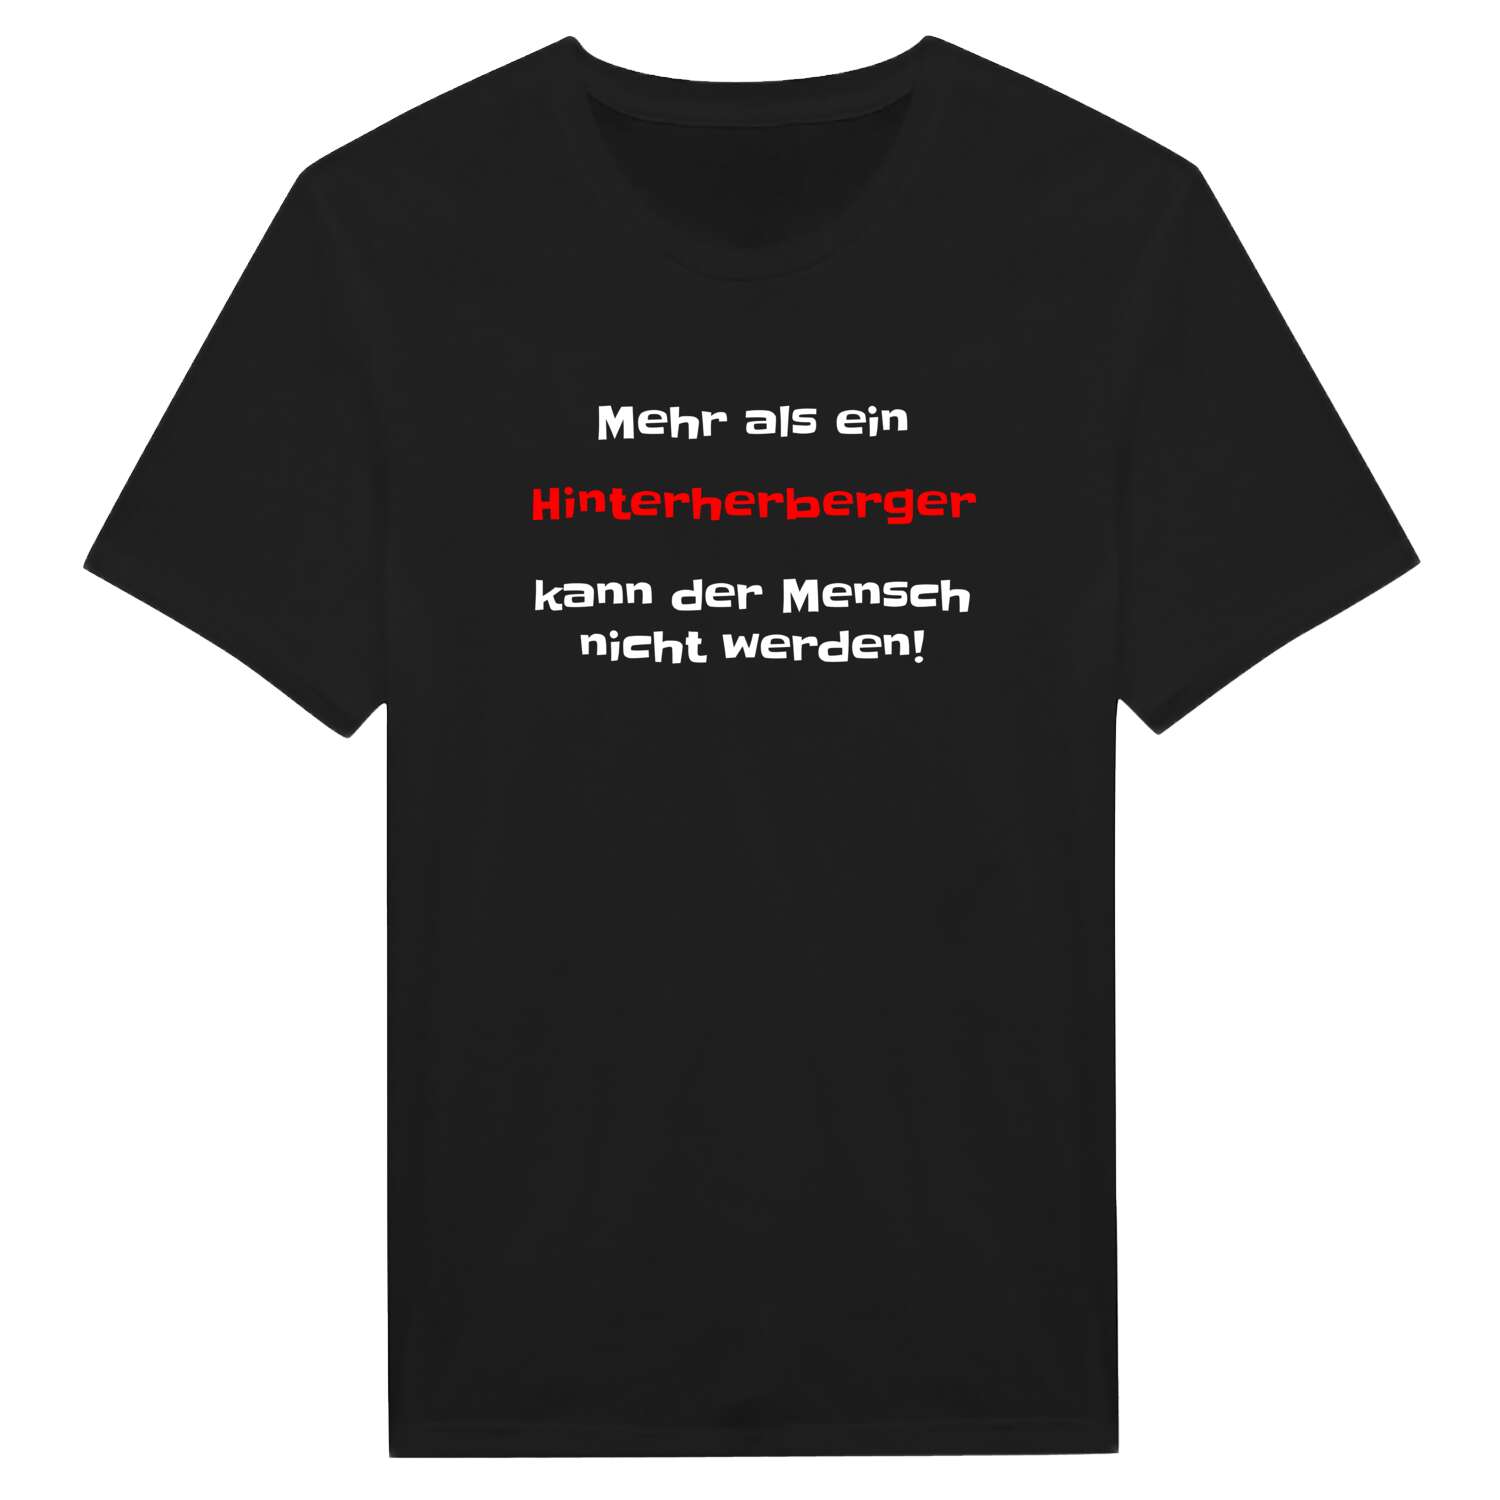 Hinterherberg T-Shirt »Mehr als ein«